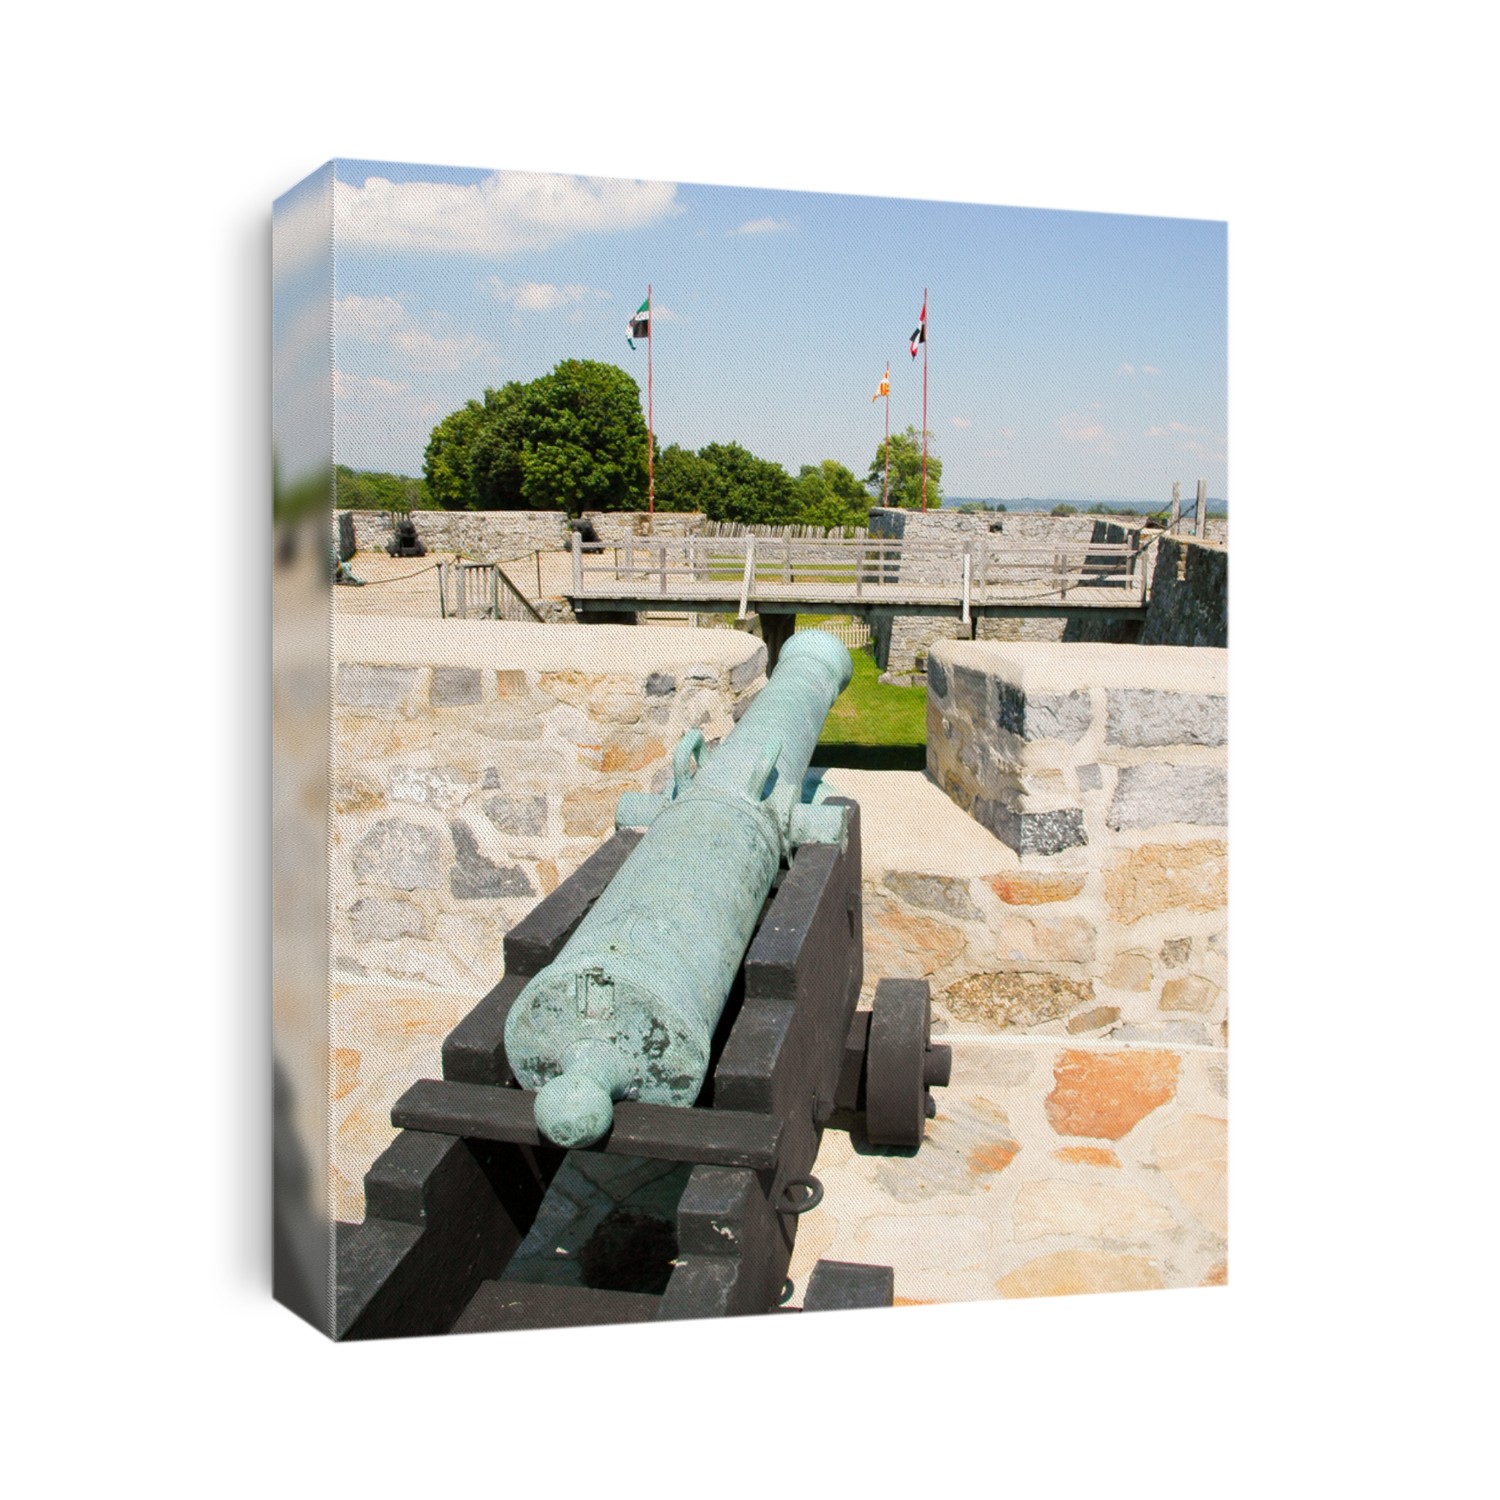 Fort Ticonderoga, stone walls and cannon